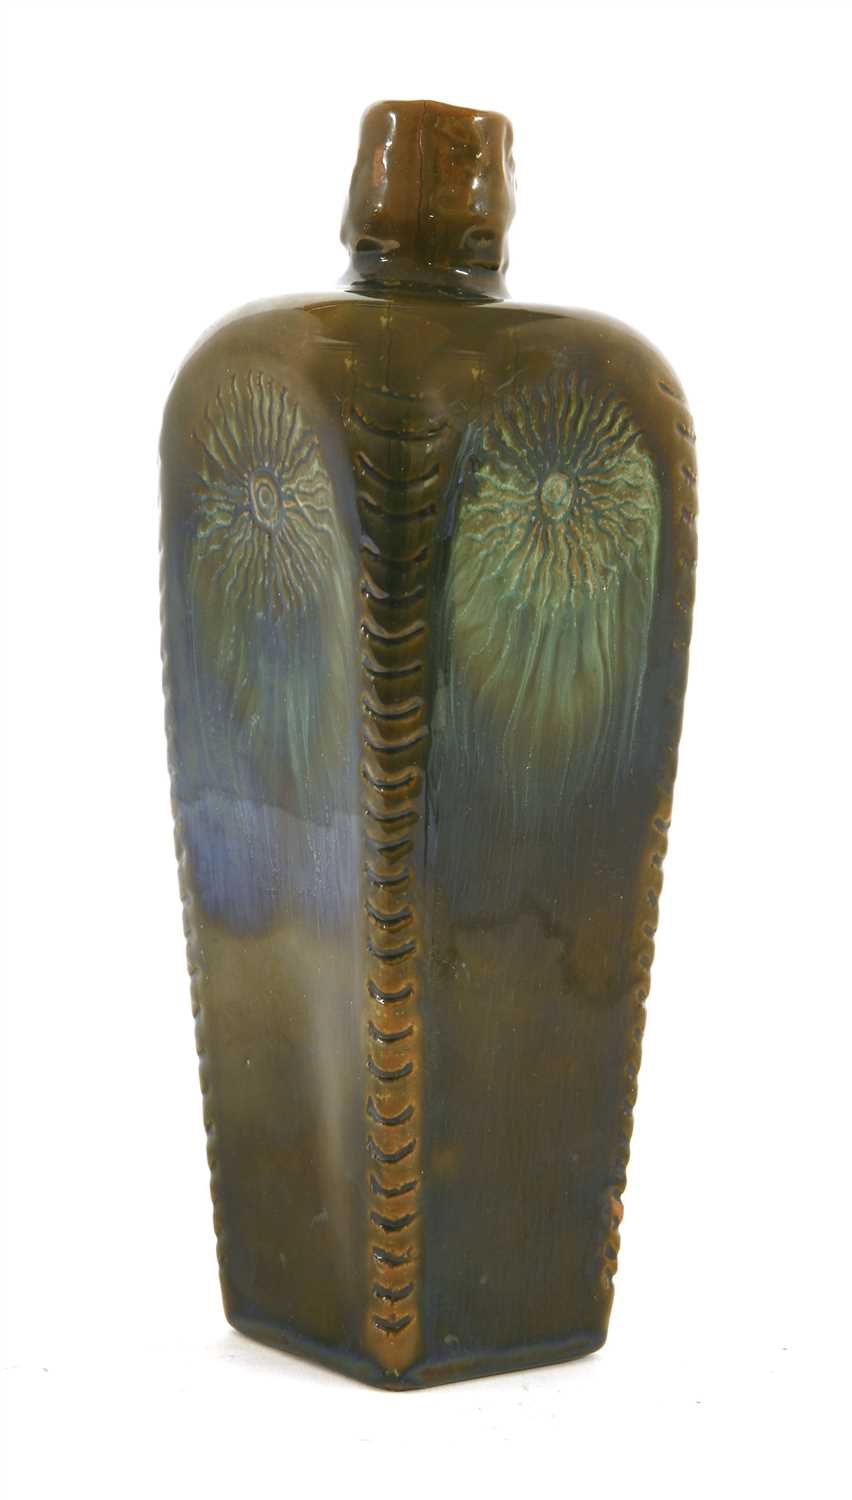 Lot 1 - A Linthorpe Pottery bottle vase